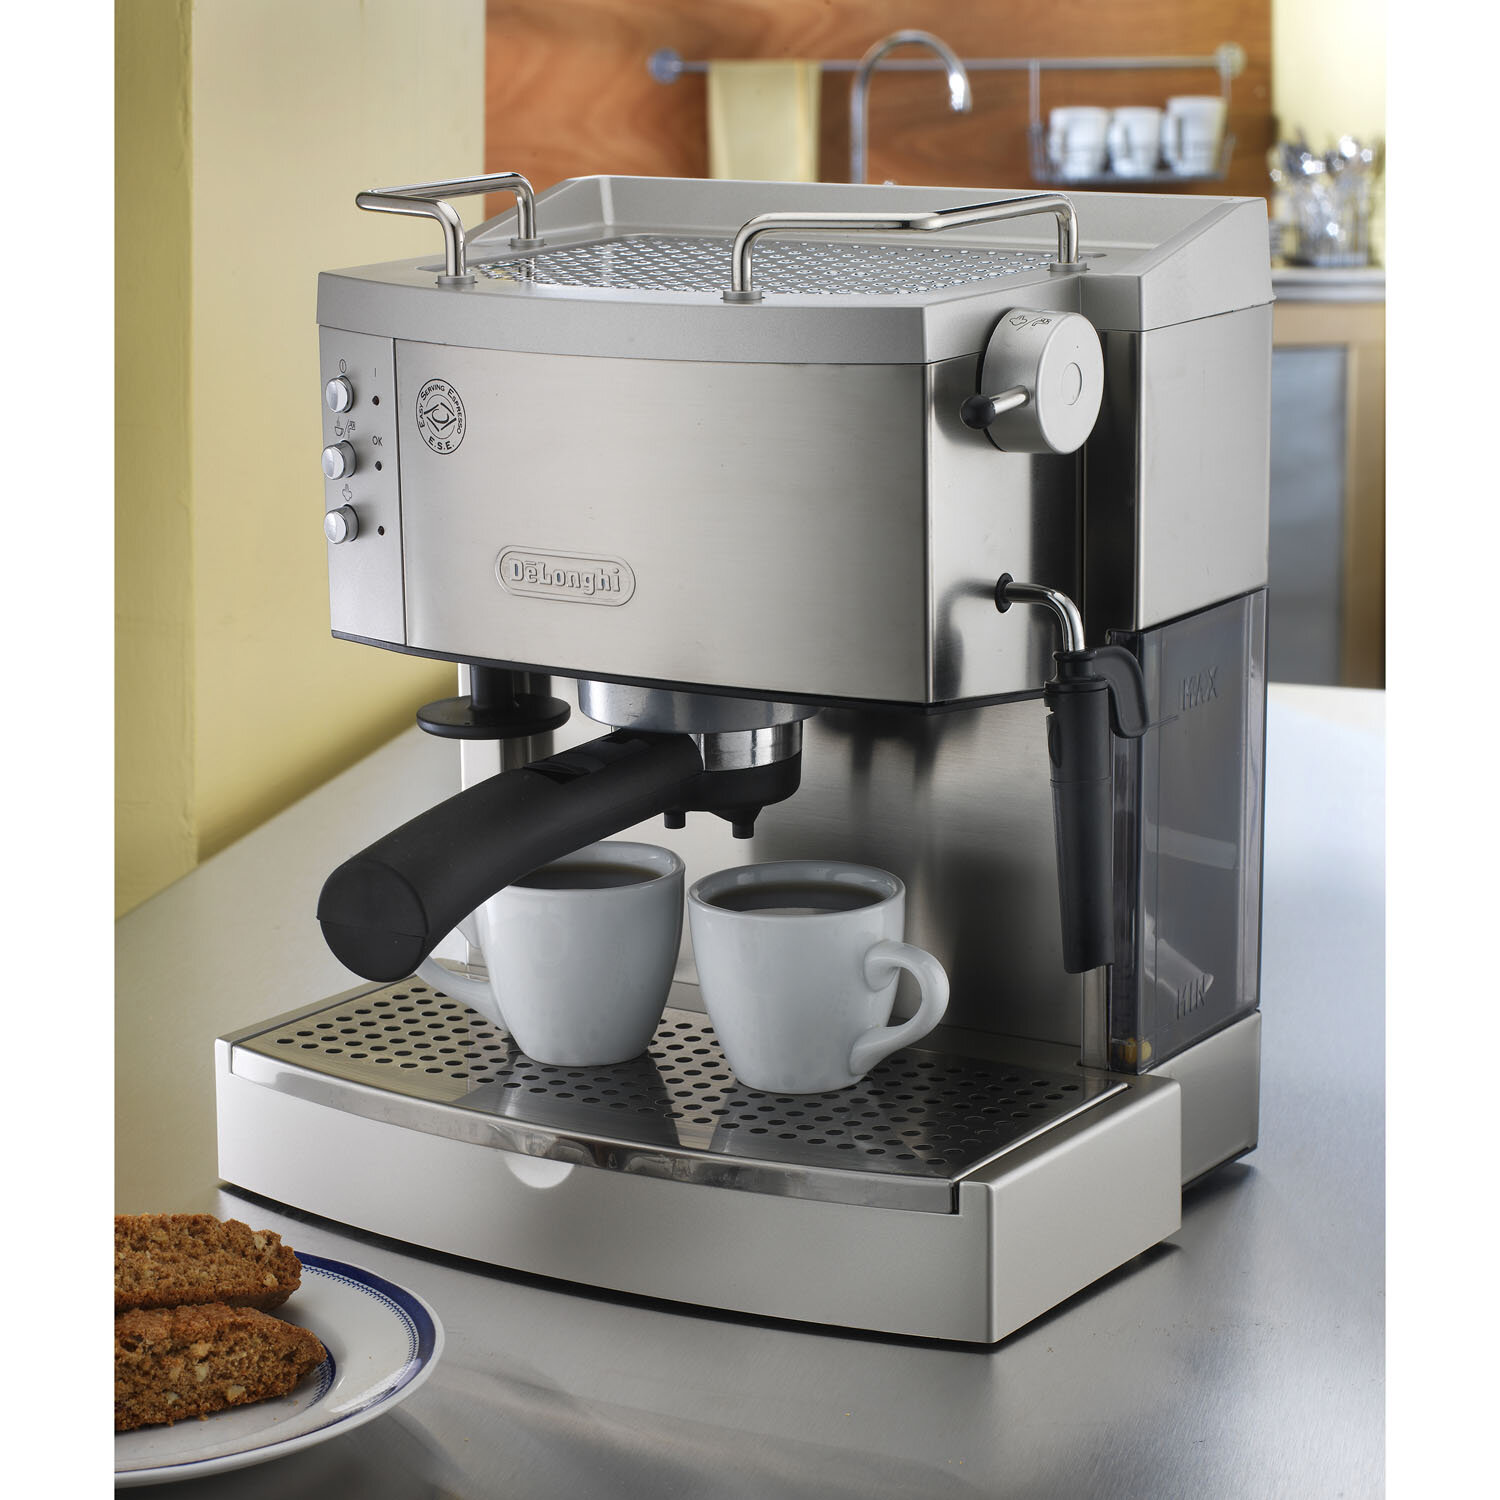 De Longhi Ec702 15 Bar Pump Espresso Maker Reviews Wayfair